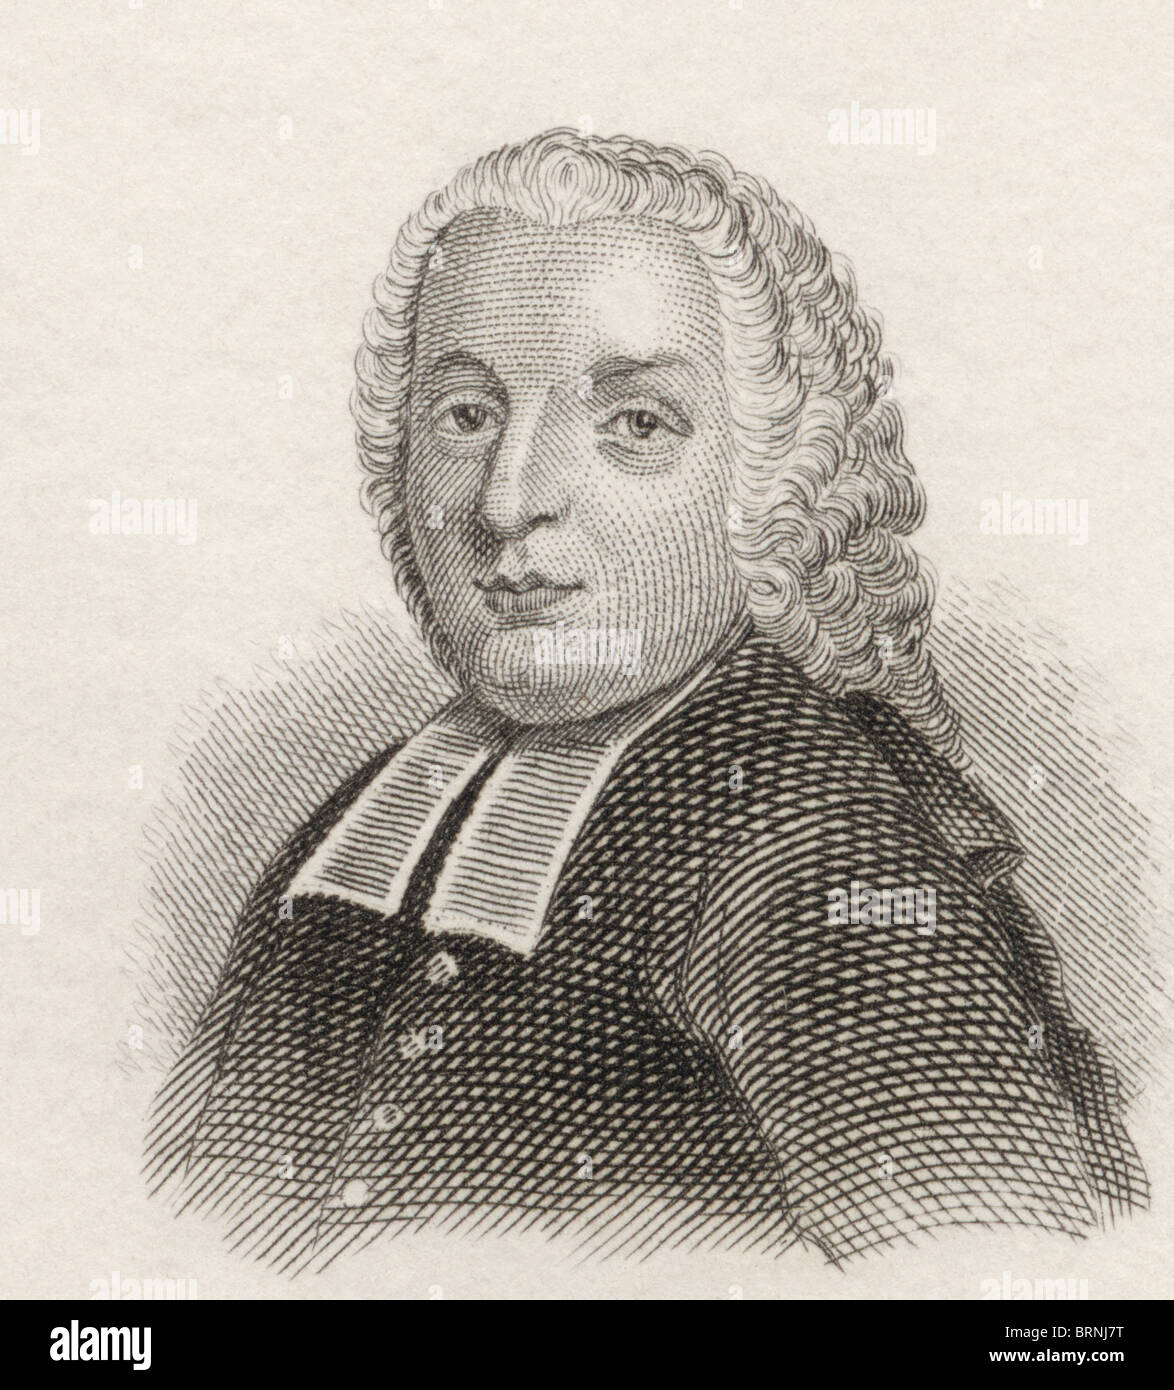 Pietro Antonio Domenico Trapassi, aka Metastasio, 1698 to 1782. Italian poet and librettist. Stock Photo